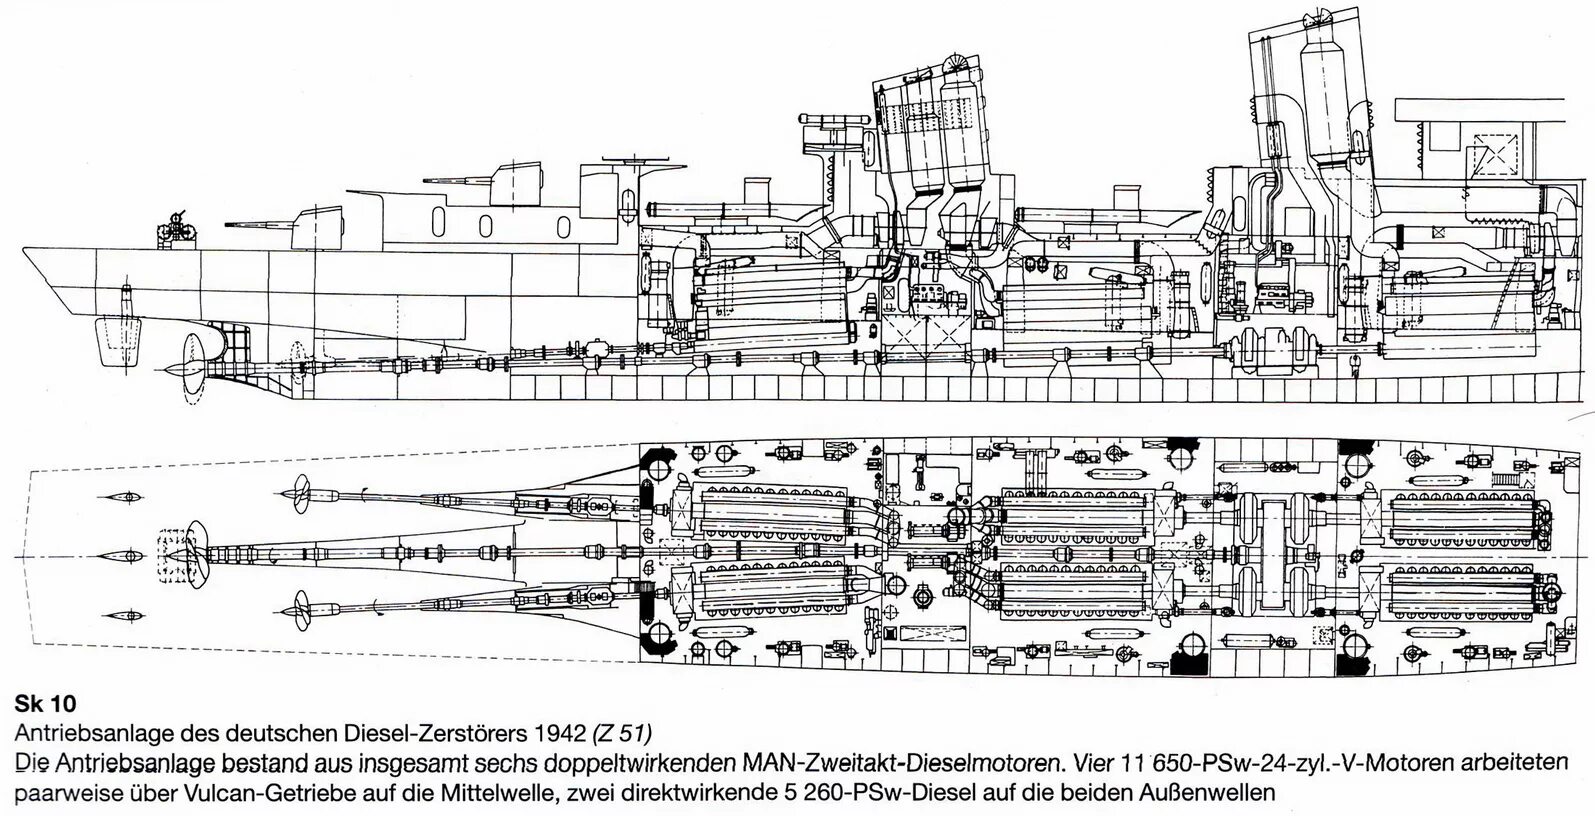 Тип м 19 10. Схема ГТЗА судна. Главный турбозубчатый агрегат ГТЗА-12-4 674. Турбозубчатый агрегат корабля. Котлотурбинных агрегата ГТЗА-674.